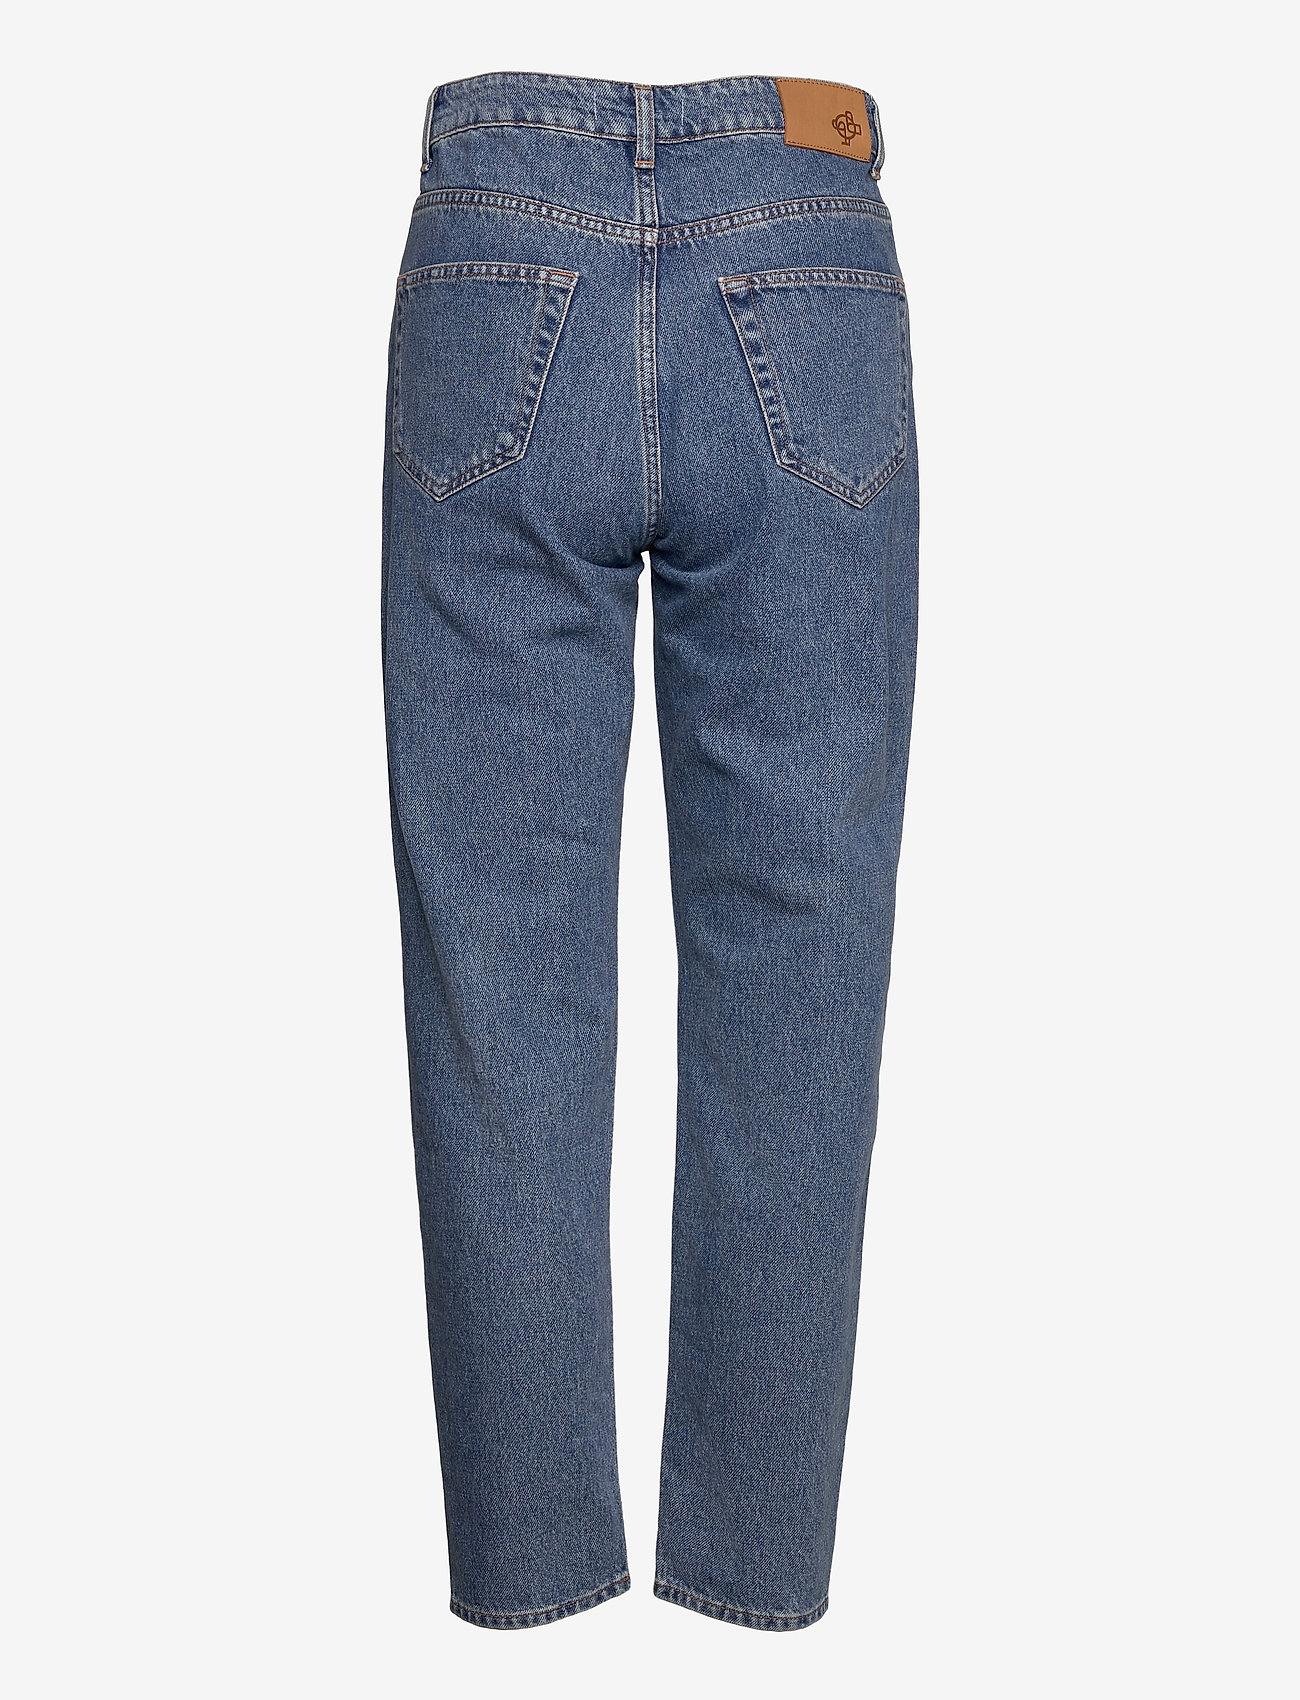 Just Female - Stormy jeans 0104 - tiesaus kirpimo džinsai - light blue - 1